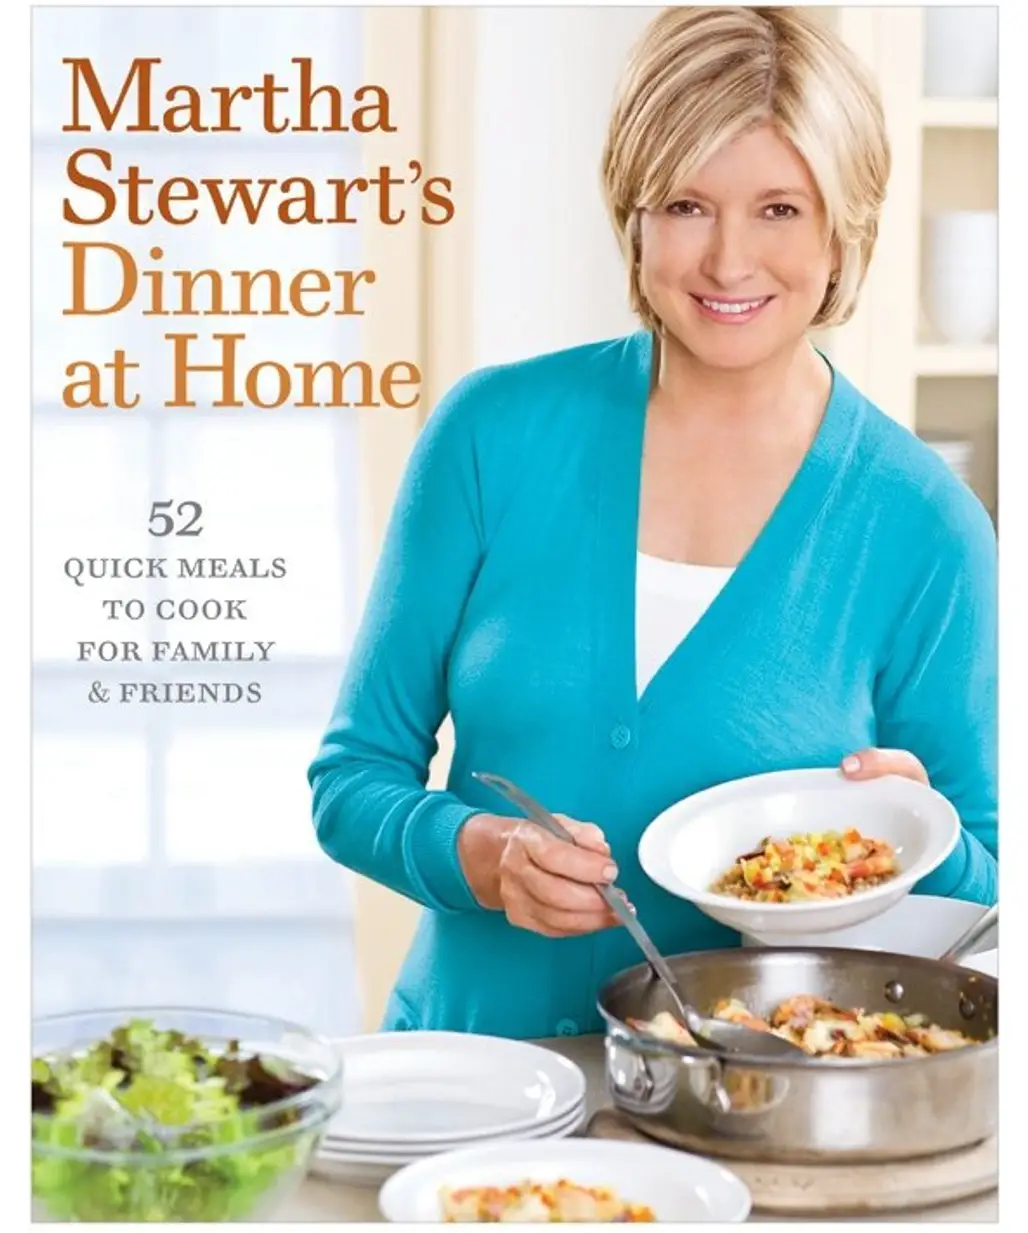 ‘Martha Stewart’s Dinner at Home’ by Martha Stewart